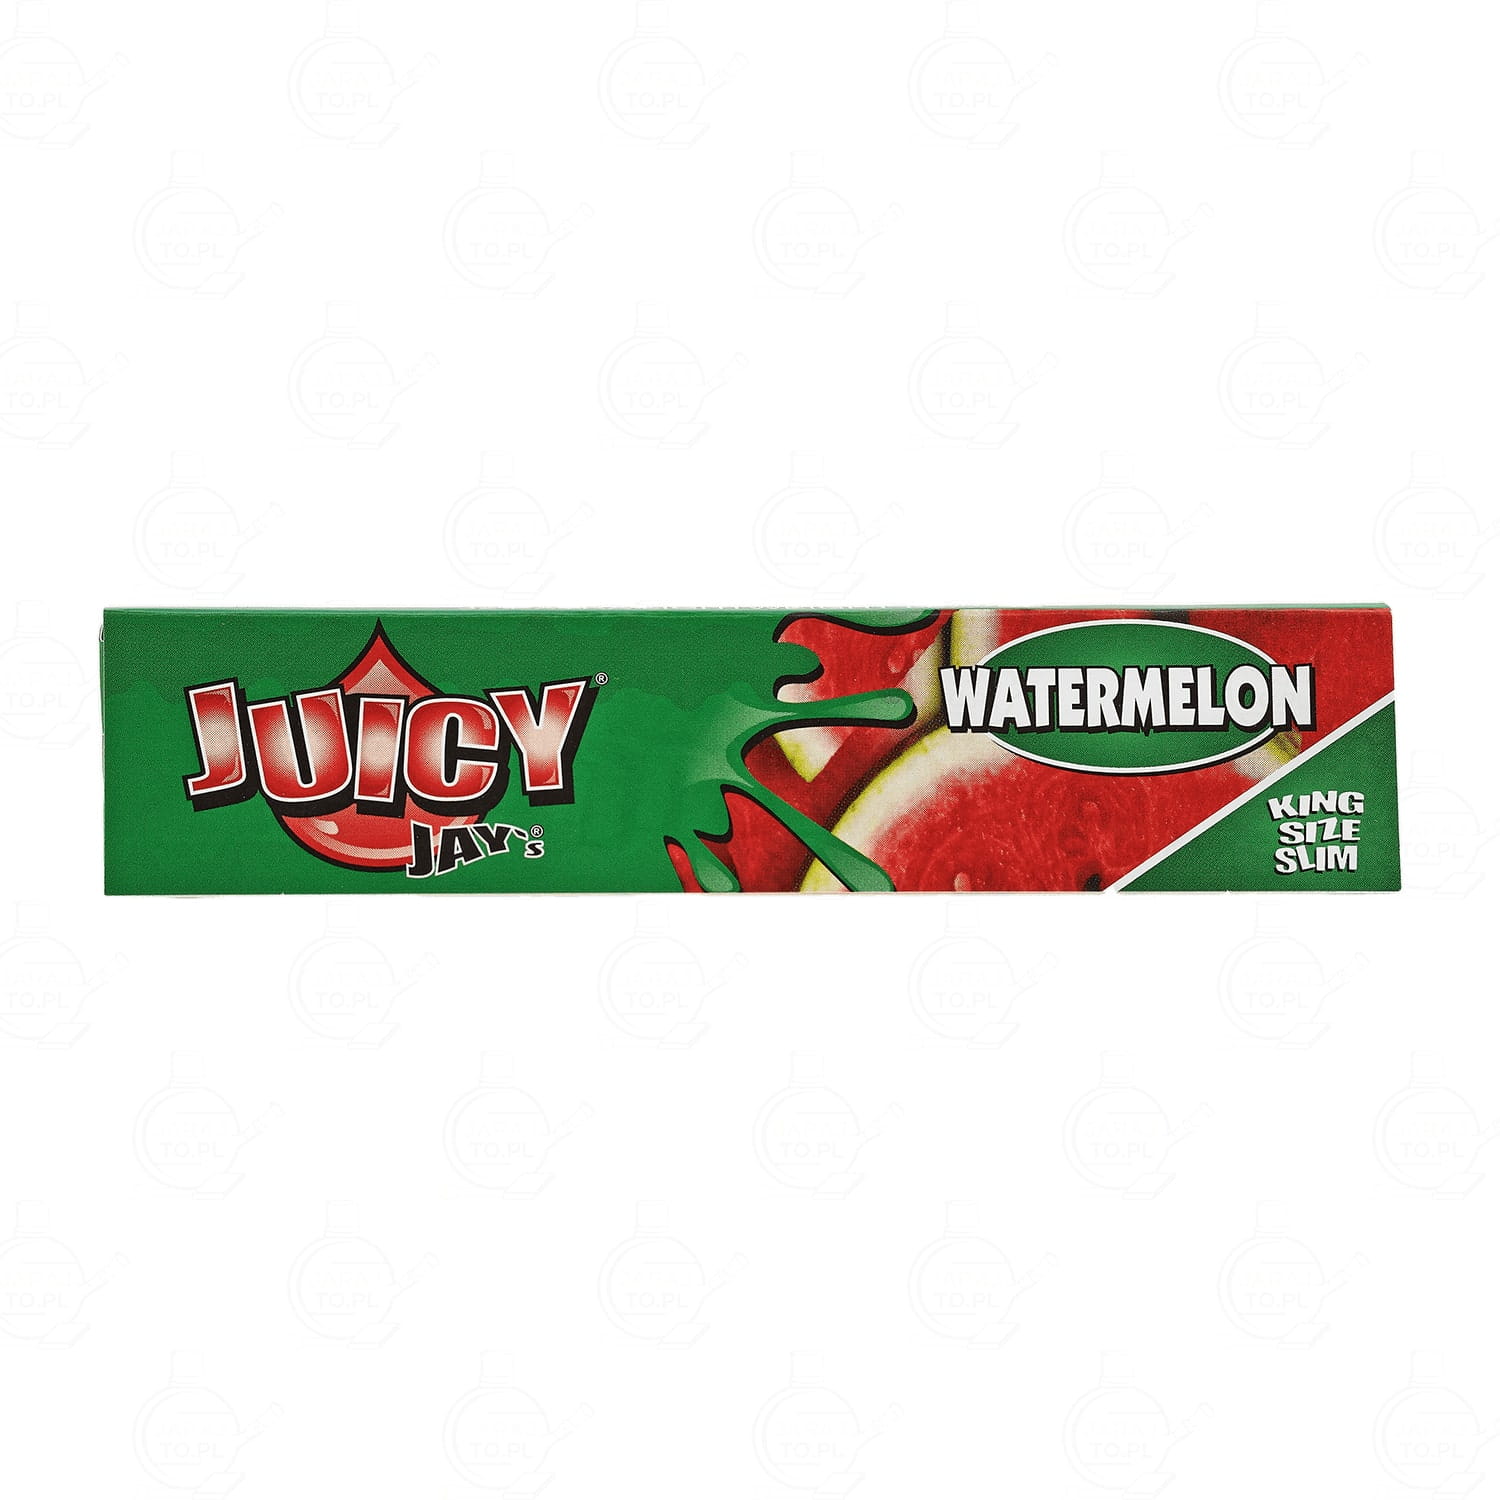 Juicy - Watermelon King  Size